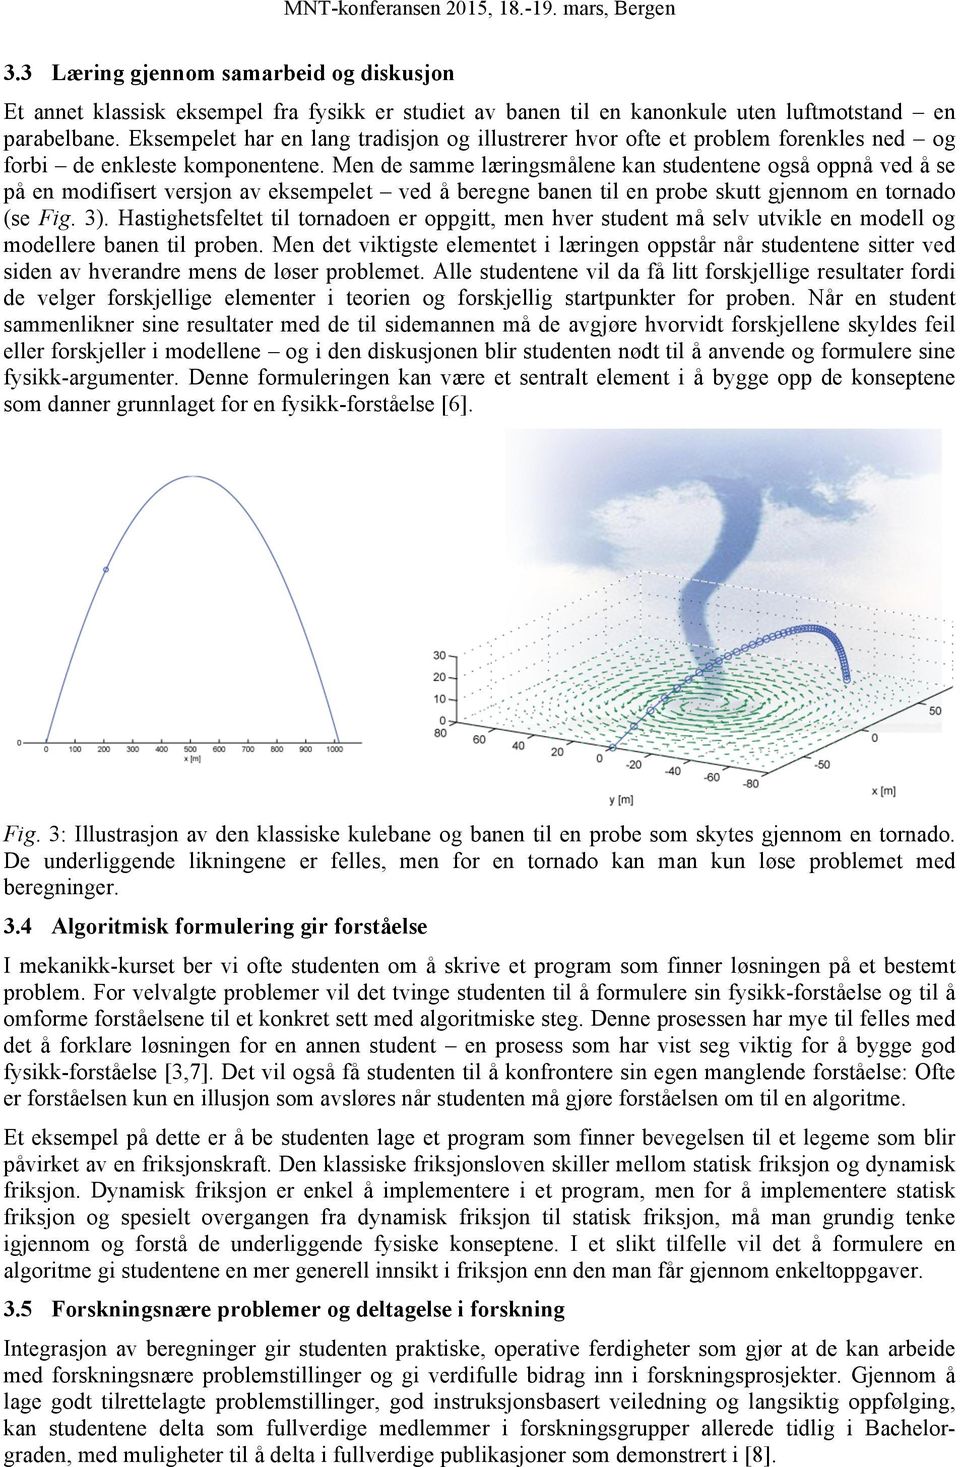 Men de samme læringsmålene kan studentene også oppnå ved å se på en modifisert versjon av eksempelet ved å beregne banen til en probe skutt gjennom en tornado (se Fig. 3).